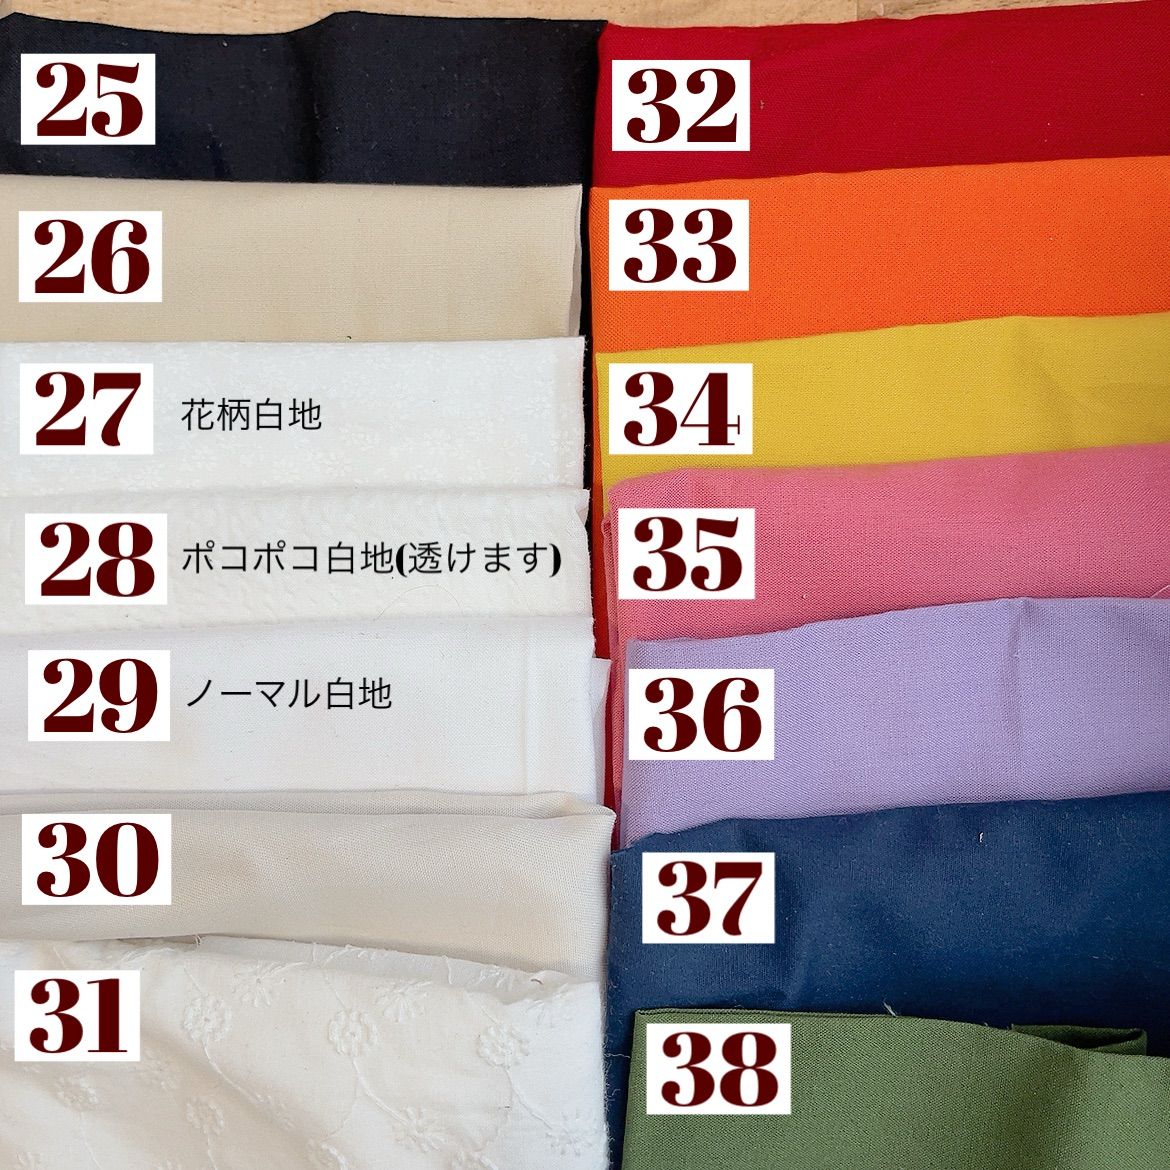 ちびぬい服 Tシャツ サロペットセットオーダーページ - メルカリ